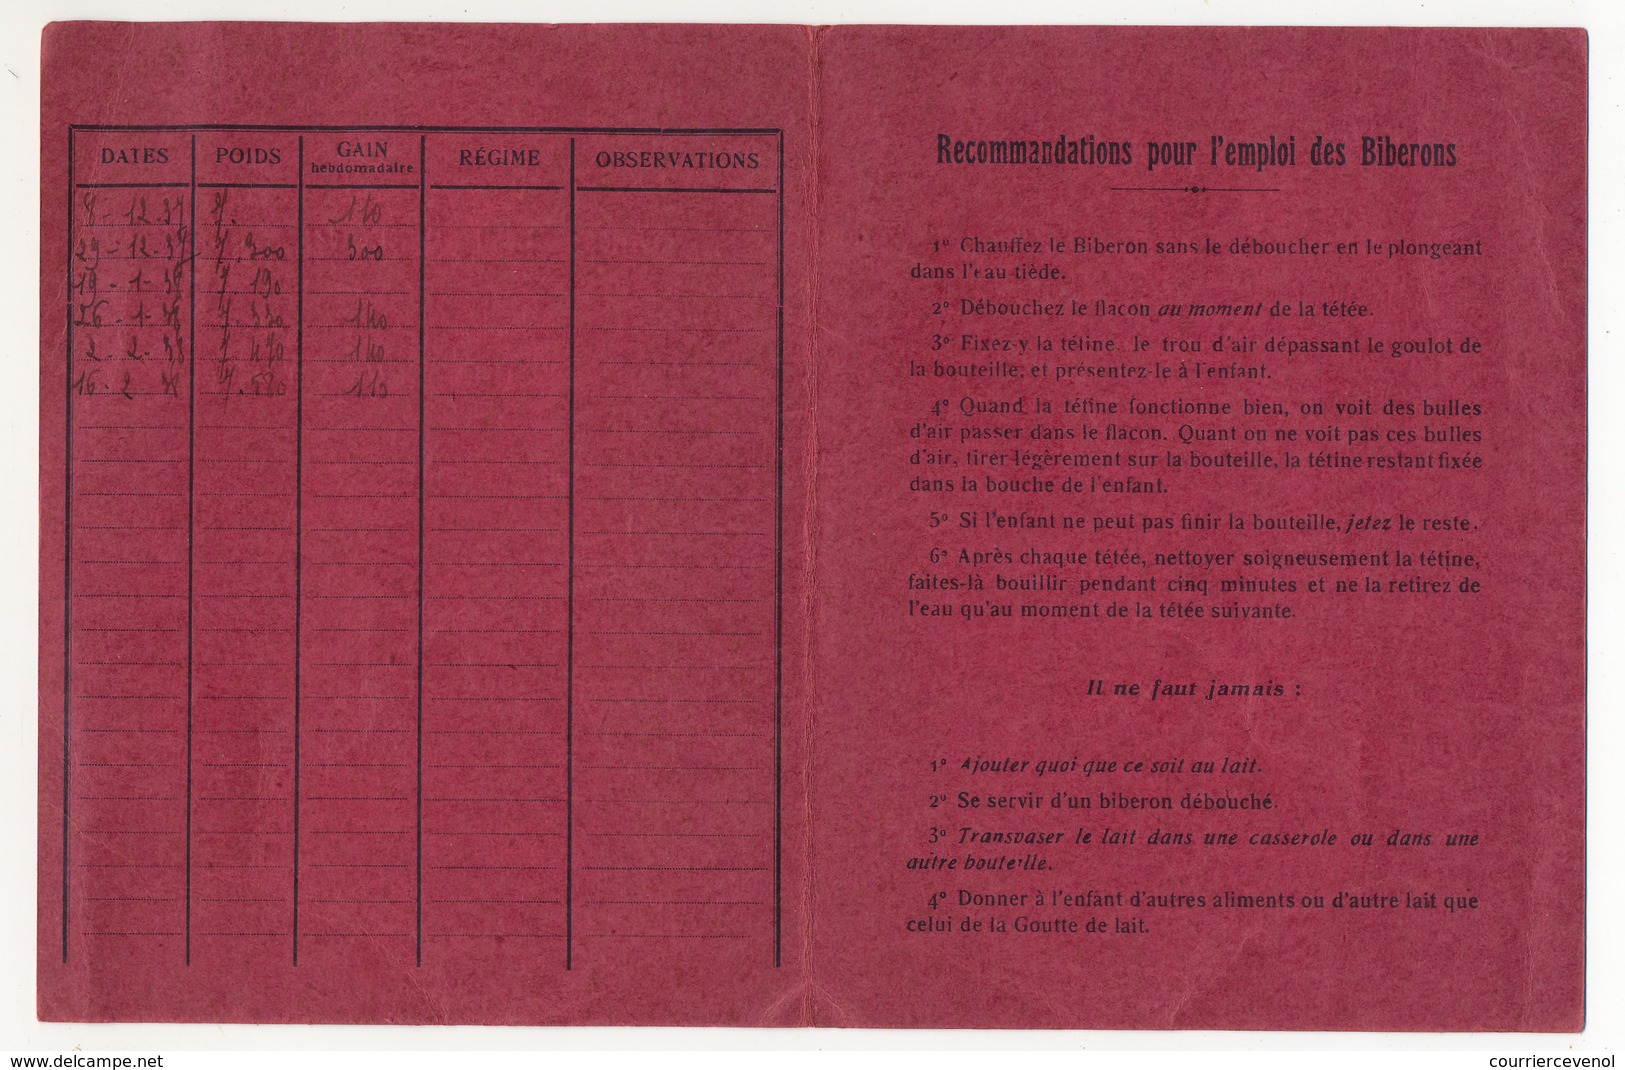 MAROC - GOUTTE DE LAIT De KHOURIGBA - Livret De Consultations Pour Nourrissons -1937 - Unclassified